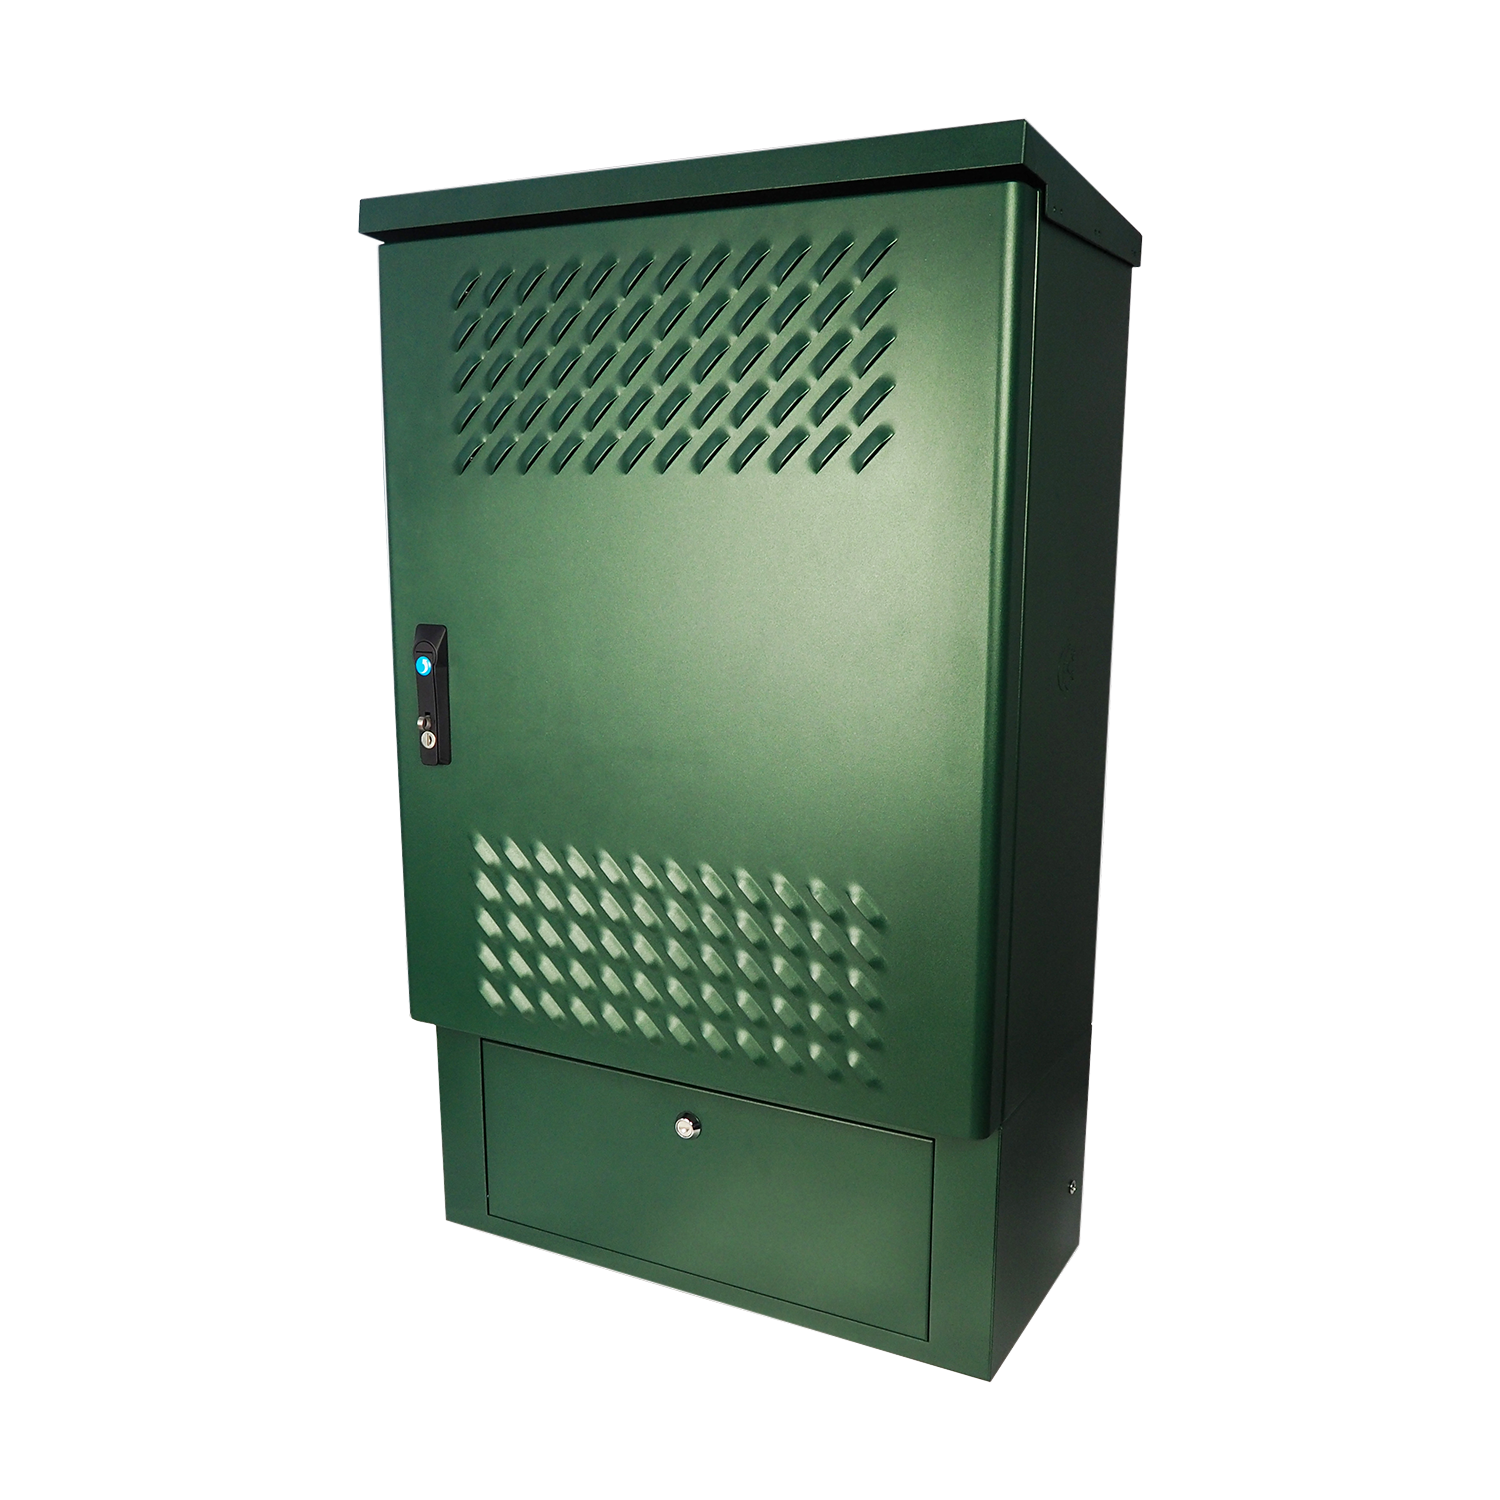 Шкаф всепогодный настенный 9U (Ш600 × Г300), нерж. сталь. компл. Т1 с контроллером MC1 и датчиками от ЦМО